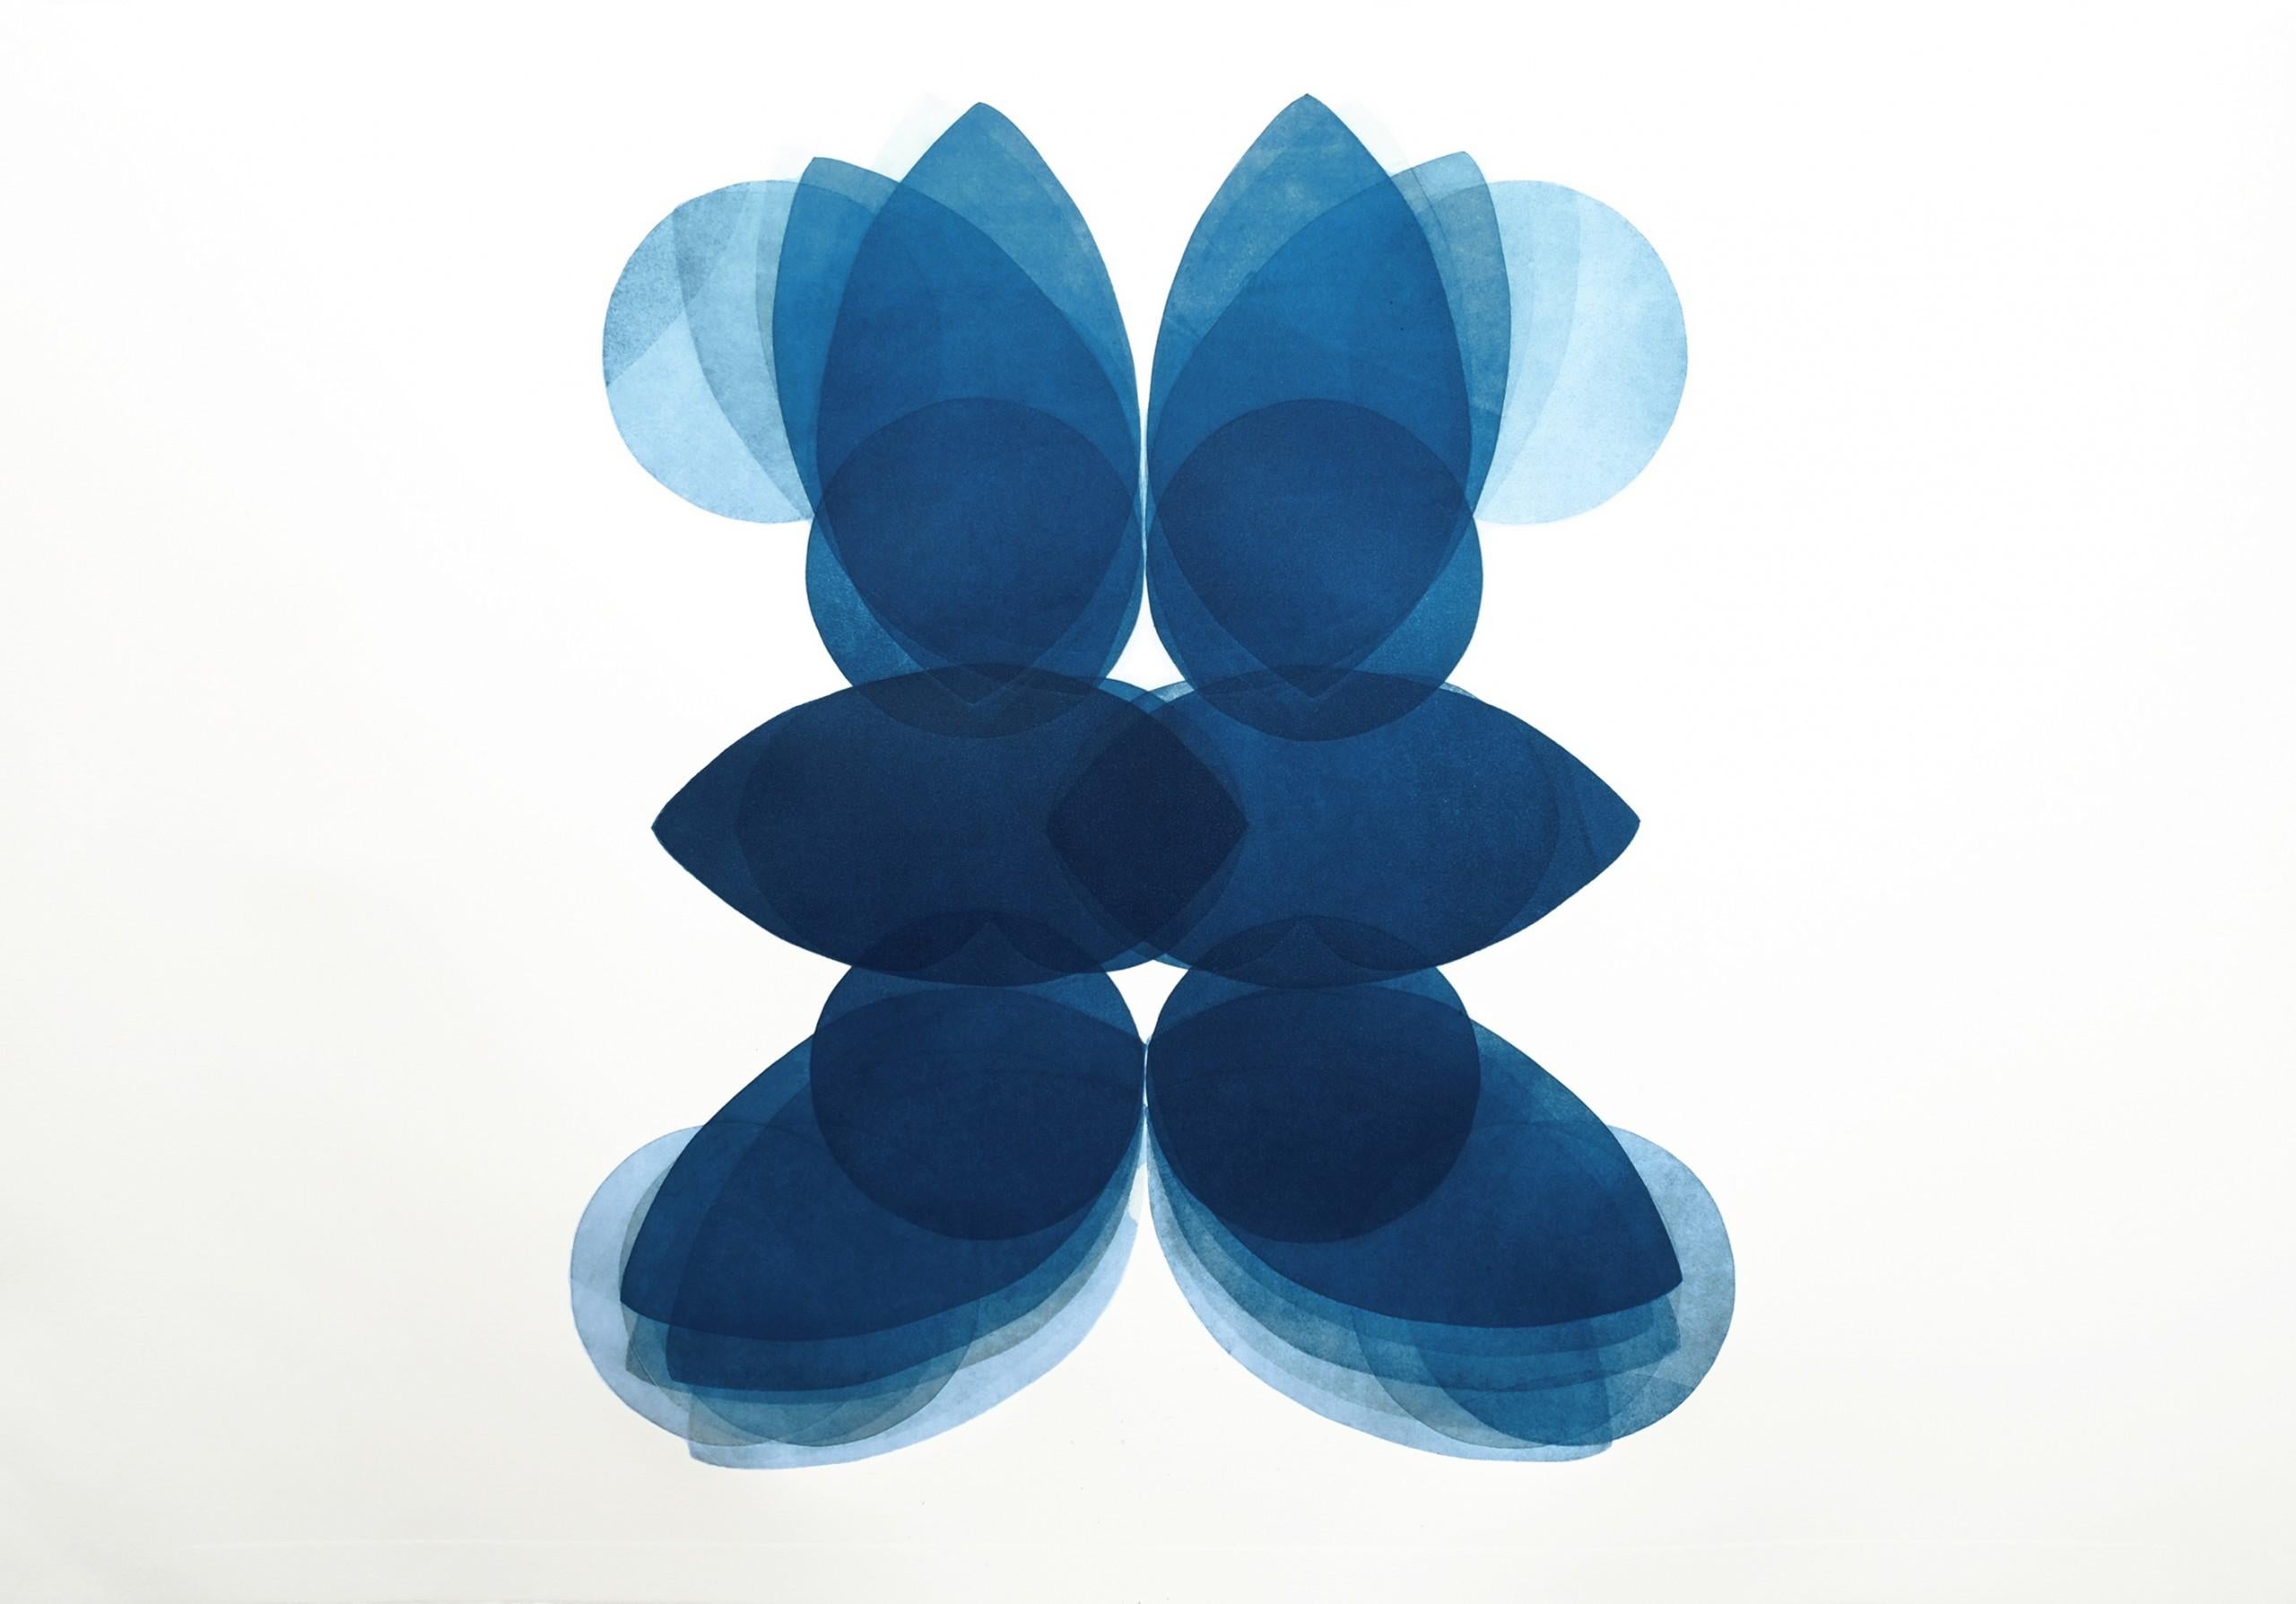 Jonathan Moss Abstract Print – NV4, Einzigartiger abstrakter Druck, zeitgenössisches blau-weißes minimalistisches Kunstwerk